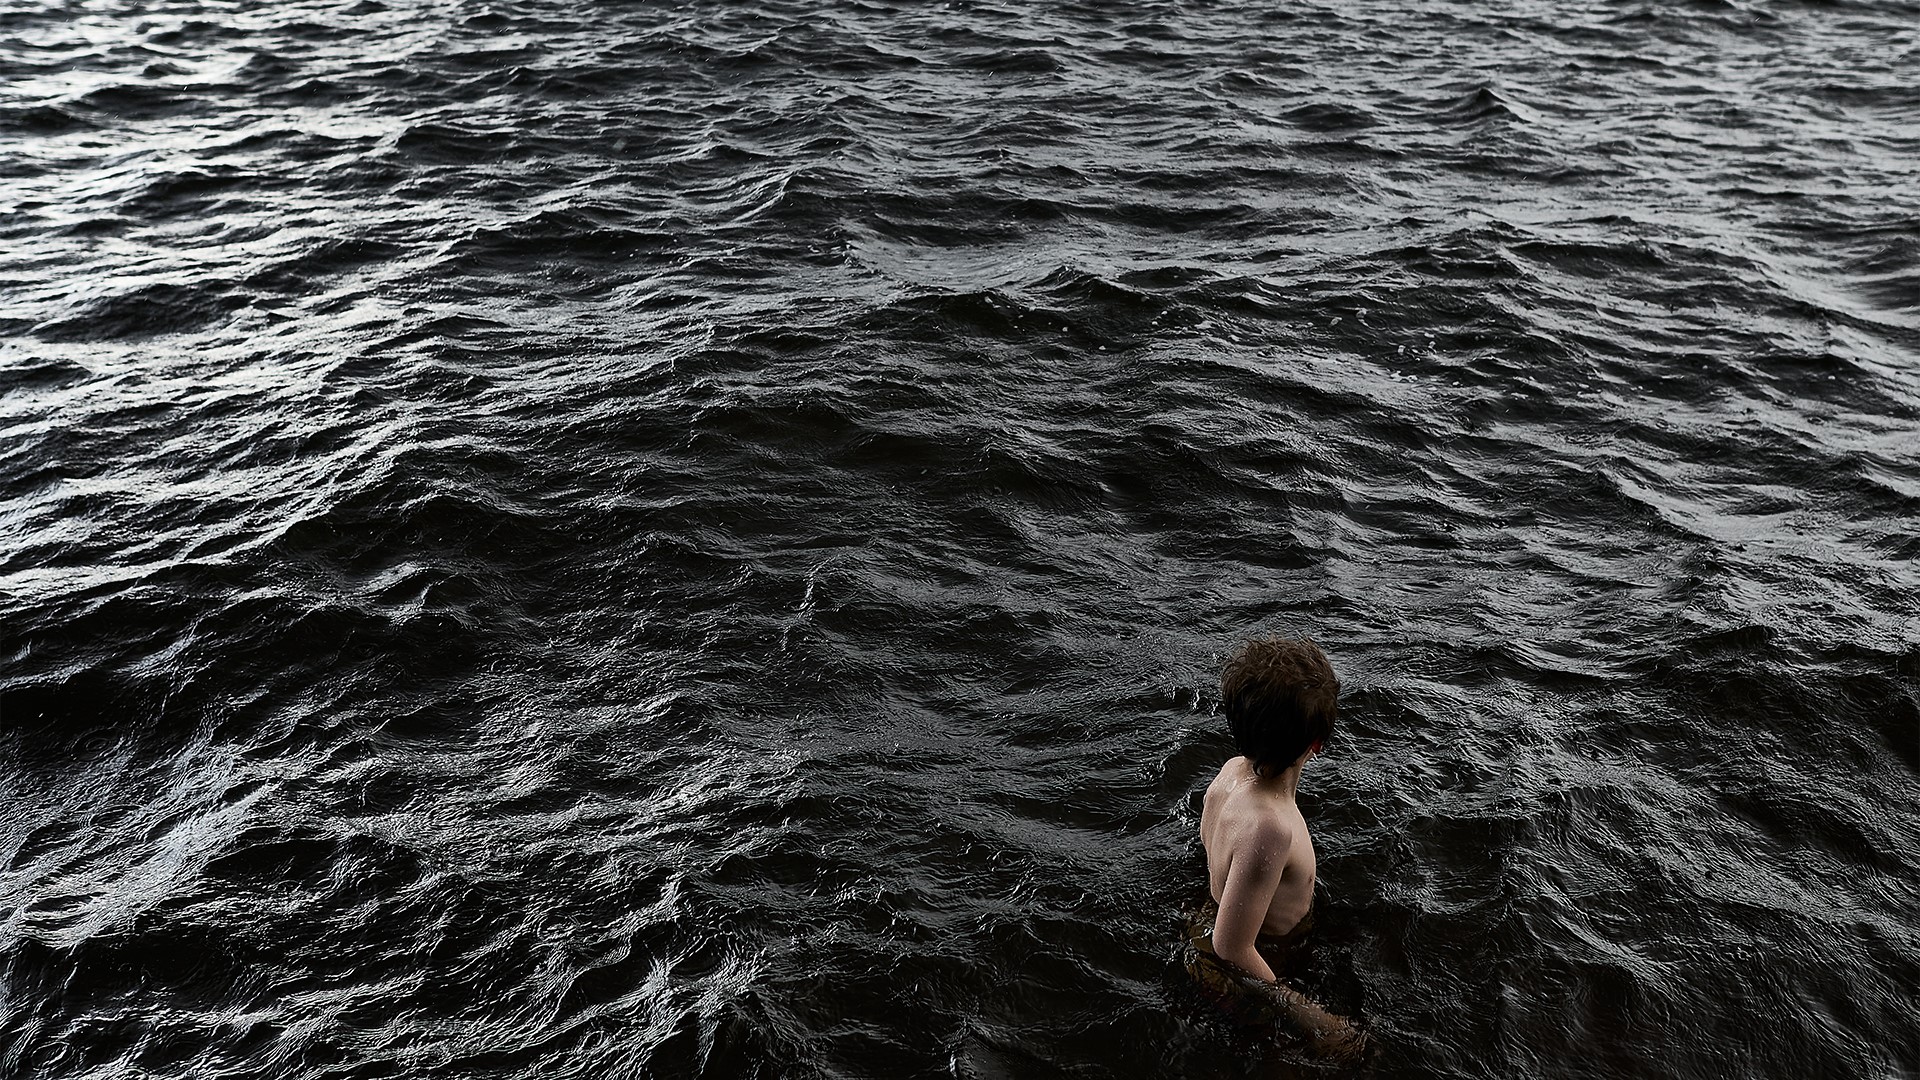 Ihminen seisoo järvessä, jossa vesi tummaa, melkein mustaa.